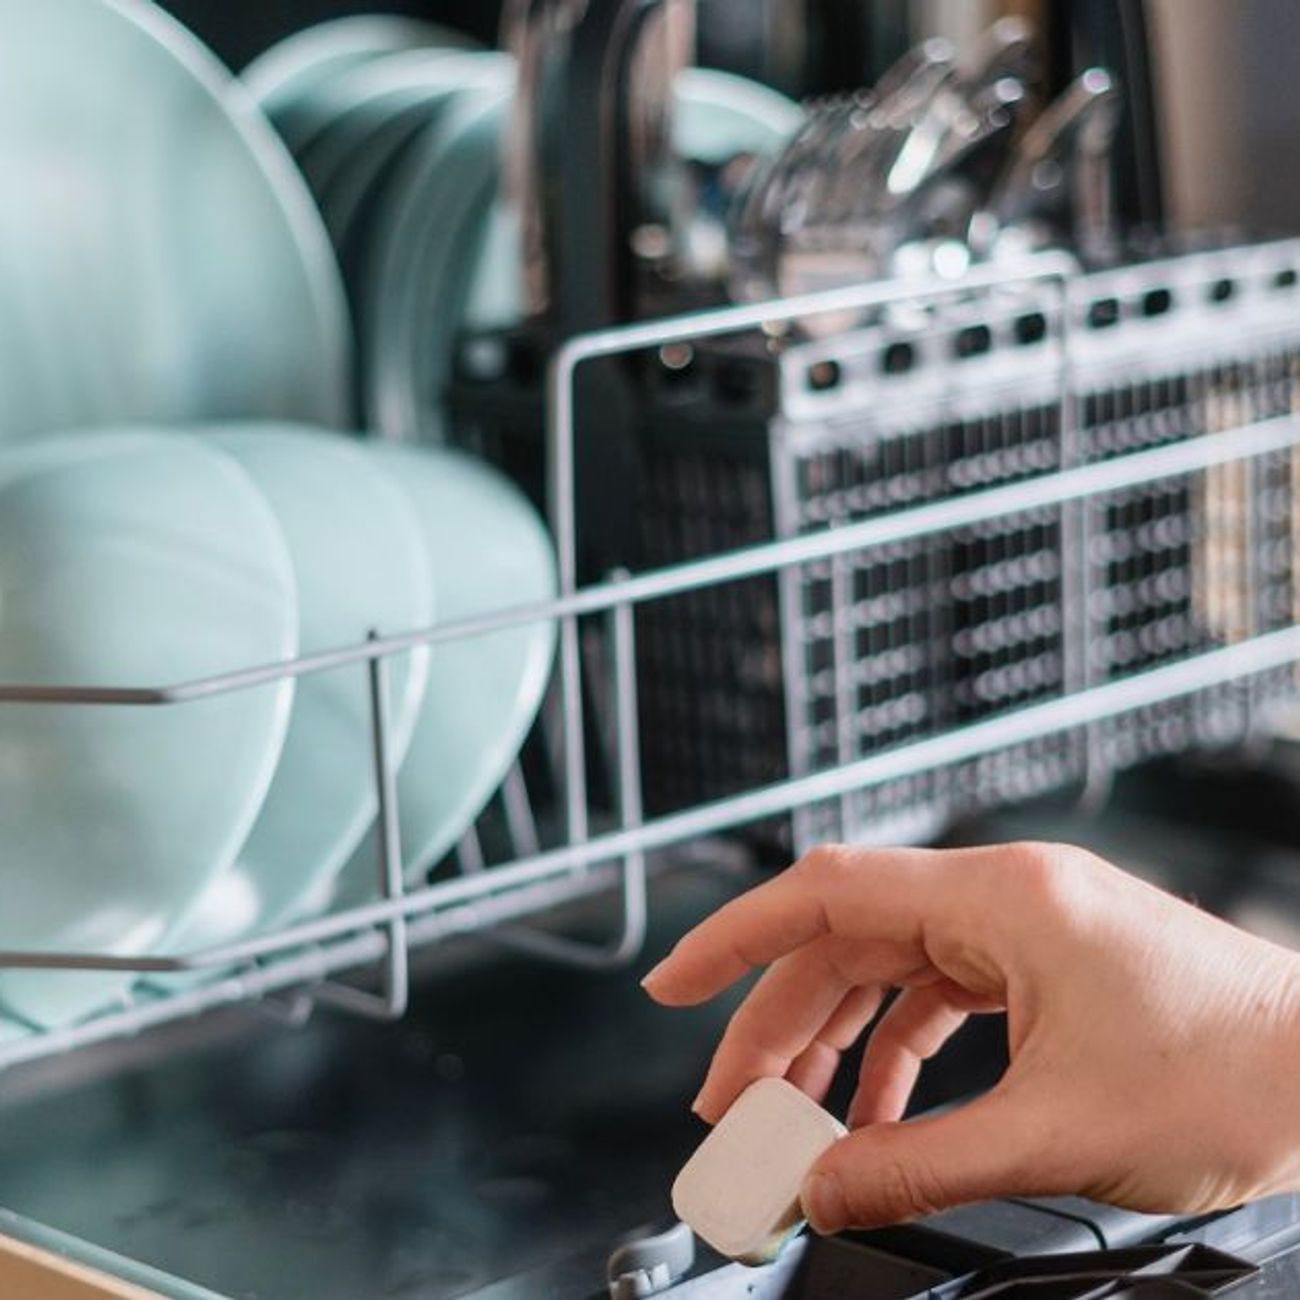 Comment choisir le meilleur lave-vaisselle ? - IKEA